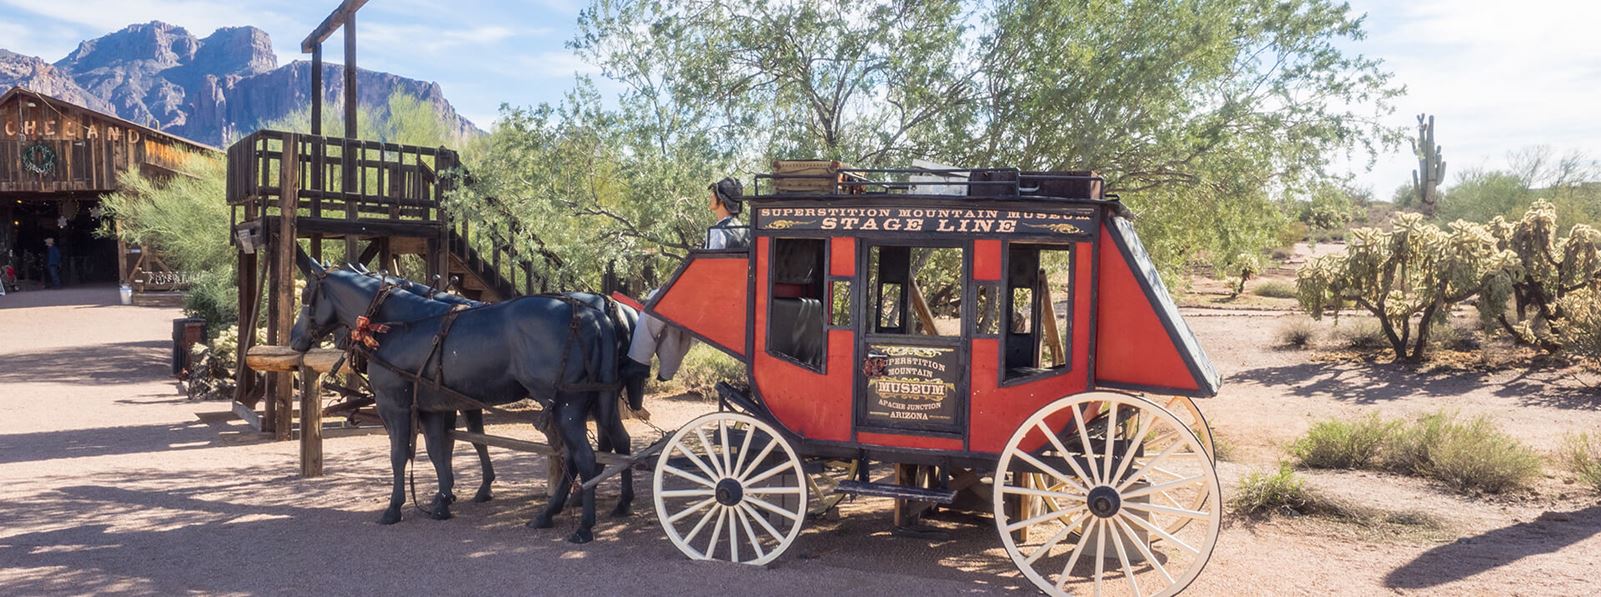 Historic Stage Line Coach in Mesa Arizona near Blossom Rock Community